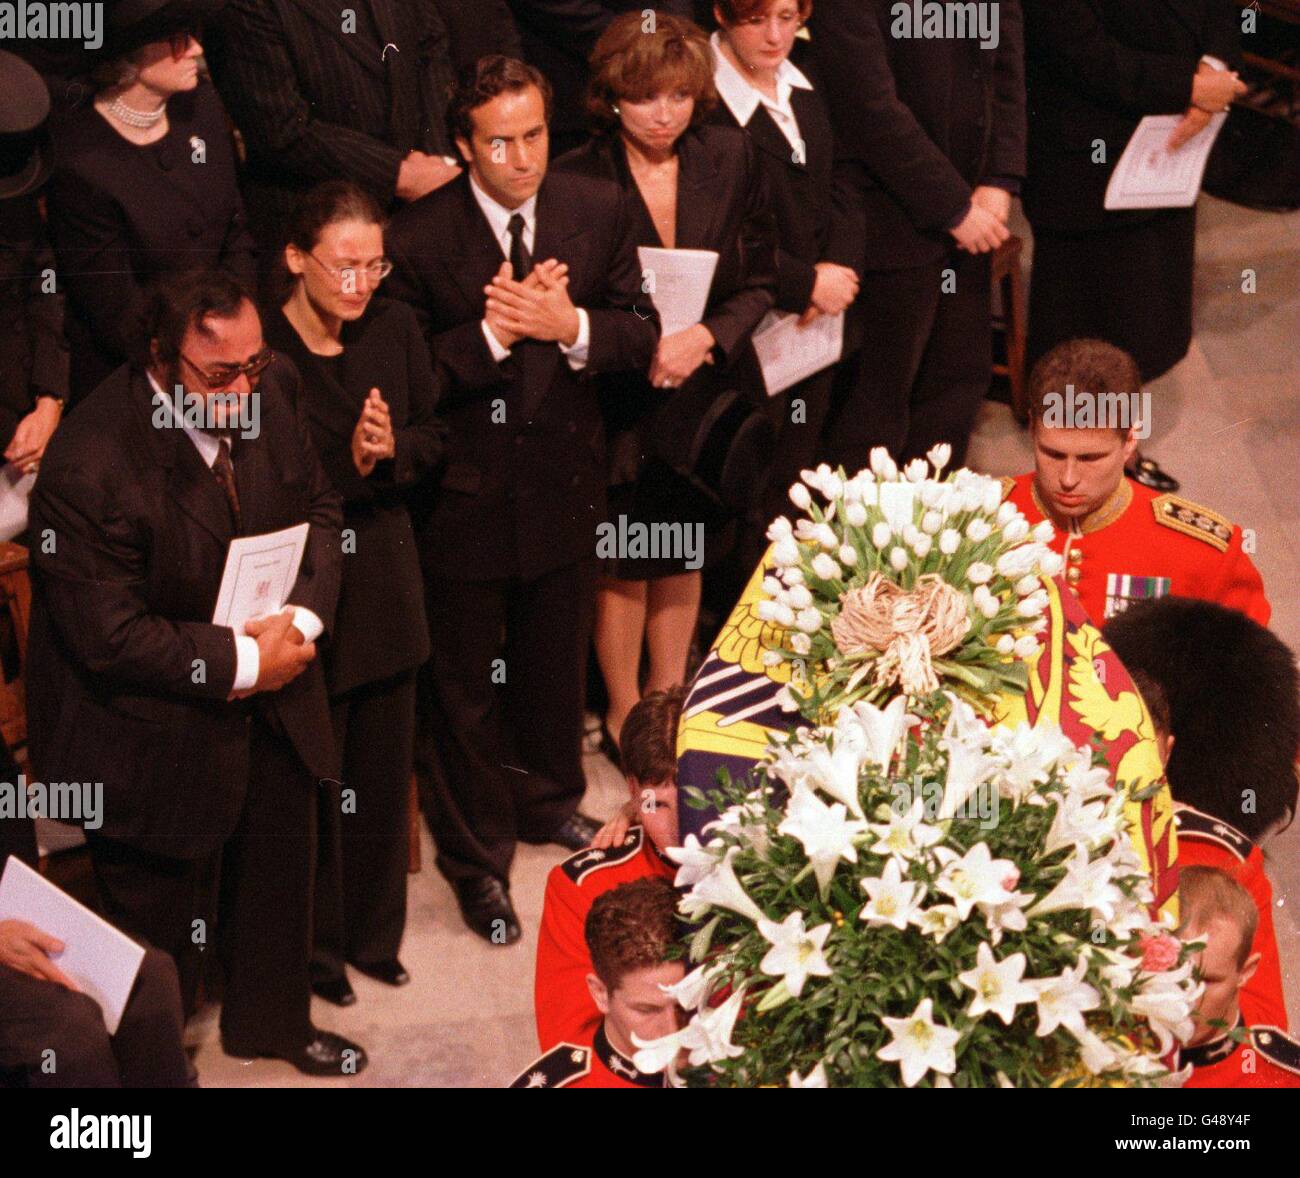 princess diana funeral photos